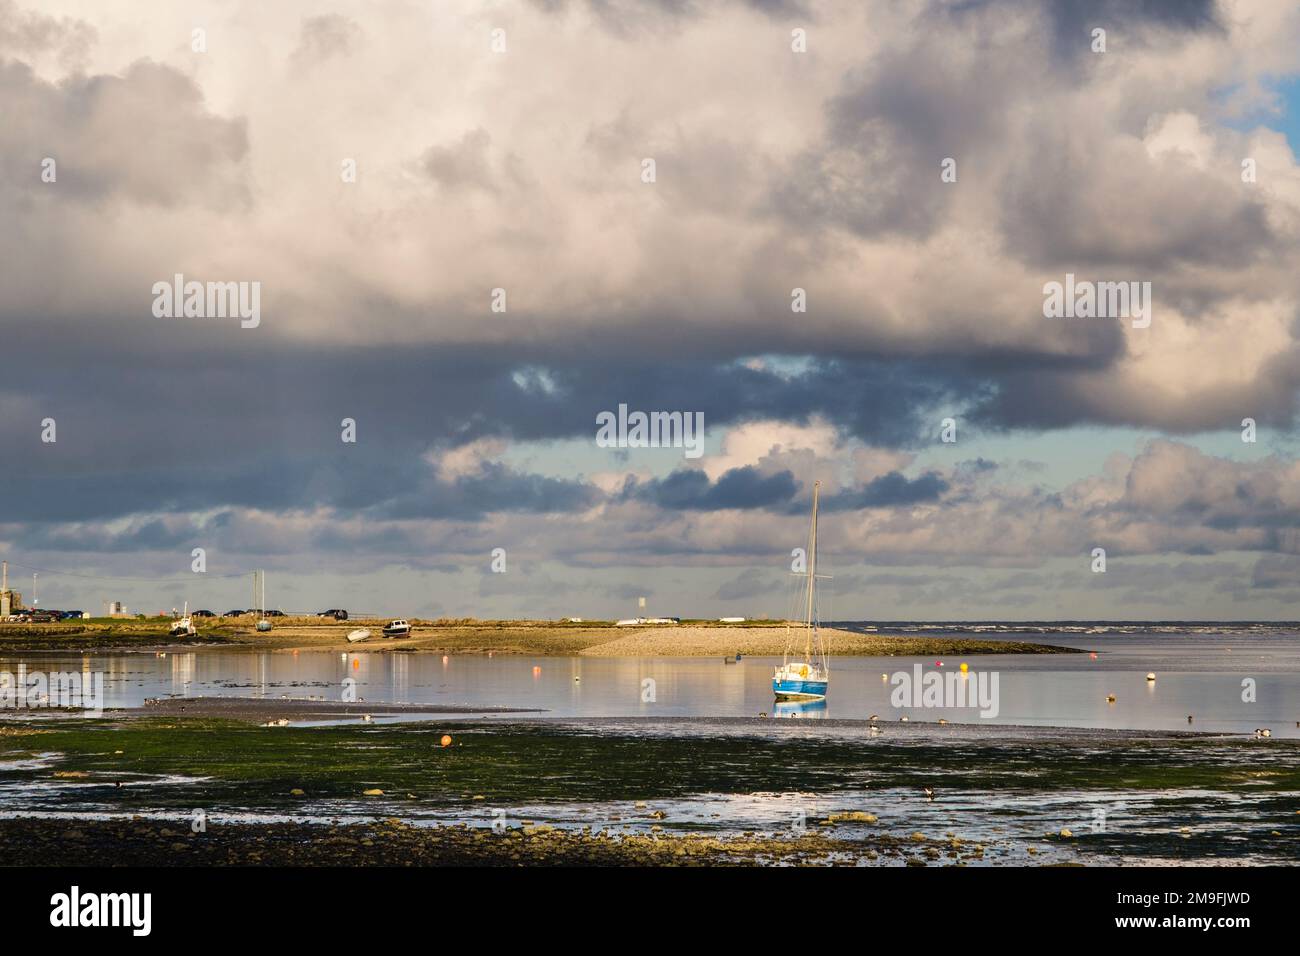 Les barboteuse se nourrissent sur le rivage devant la marée entrante à Red Wharf Bay (Traeth Coch), Benllech, île d'Anglesey (Ynys mon), pays de Galles, Royaume-Uni, Britai Banque D'Images